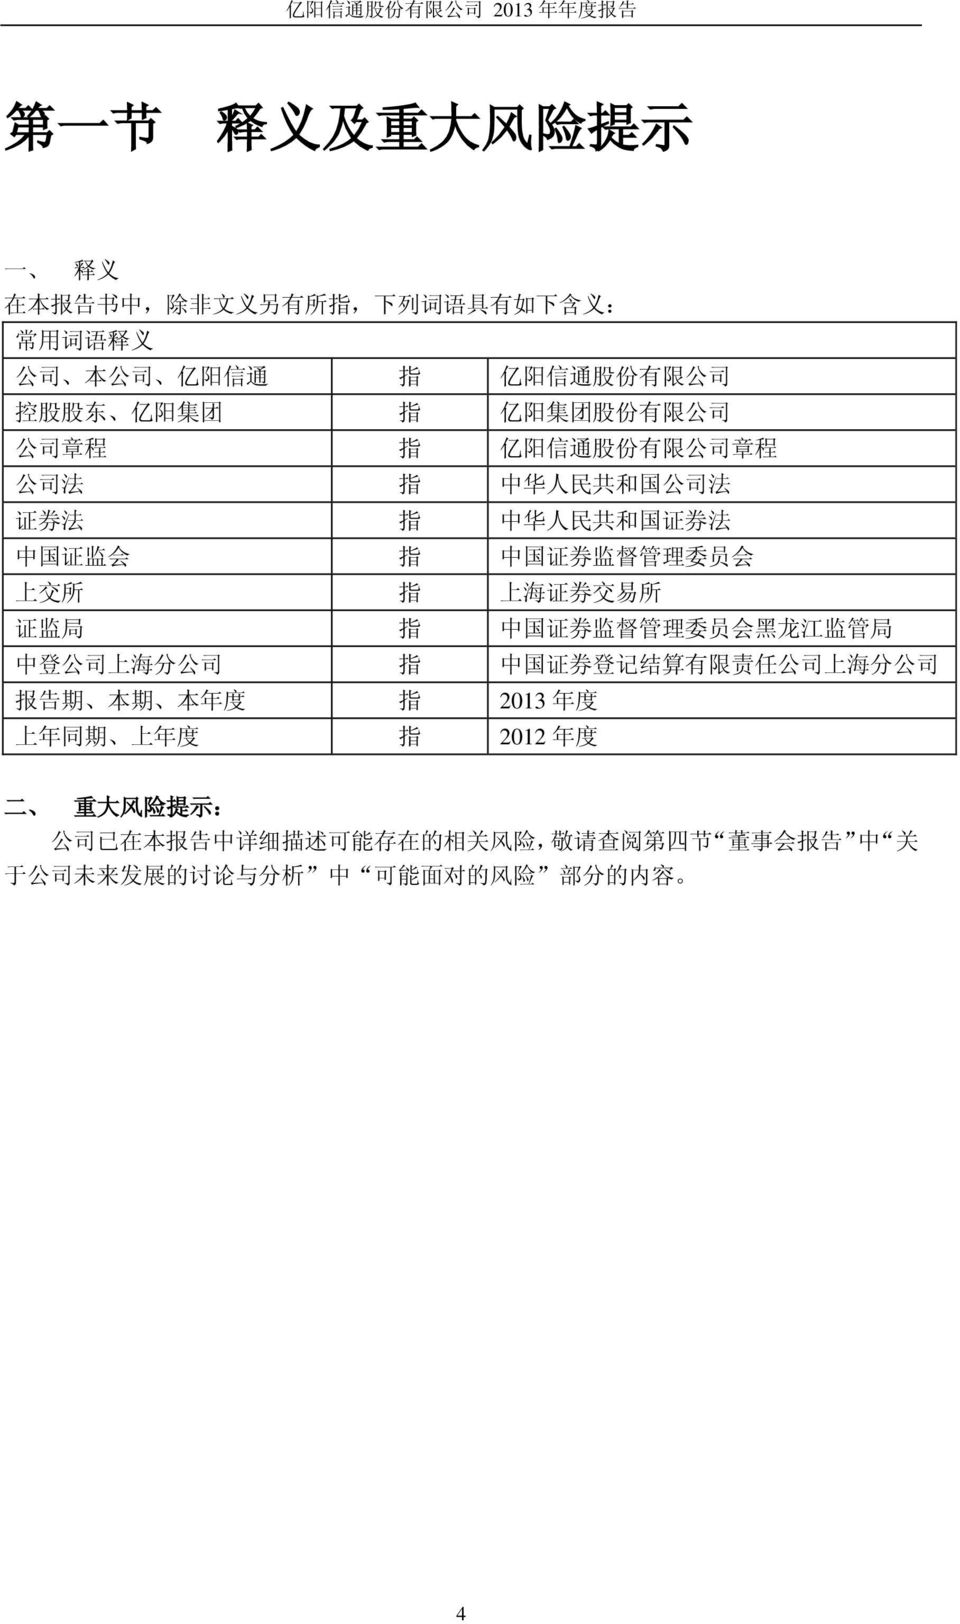 上 海 证 券 交 易 所 证 监 局 指 中 国 证 券 监 督 管 理 委 员 会 黑 龙 江 监 管 局 中 登 公 司 上 海 分 公 司 指 中 国 证 券 登 记 结 算 有 限 责 任 公 司 上 海 分 公 司 报 告 期 本 期 本 年 度 指 2013 年 度 上 年 同 期 上 年